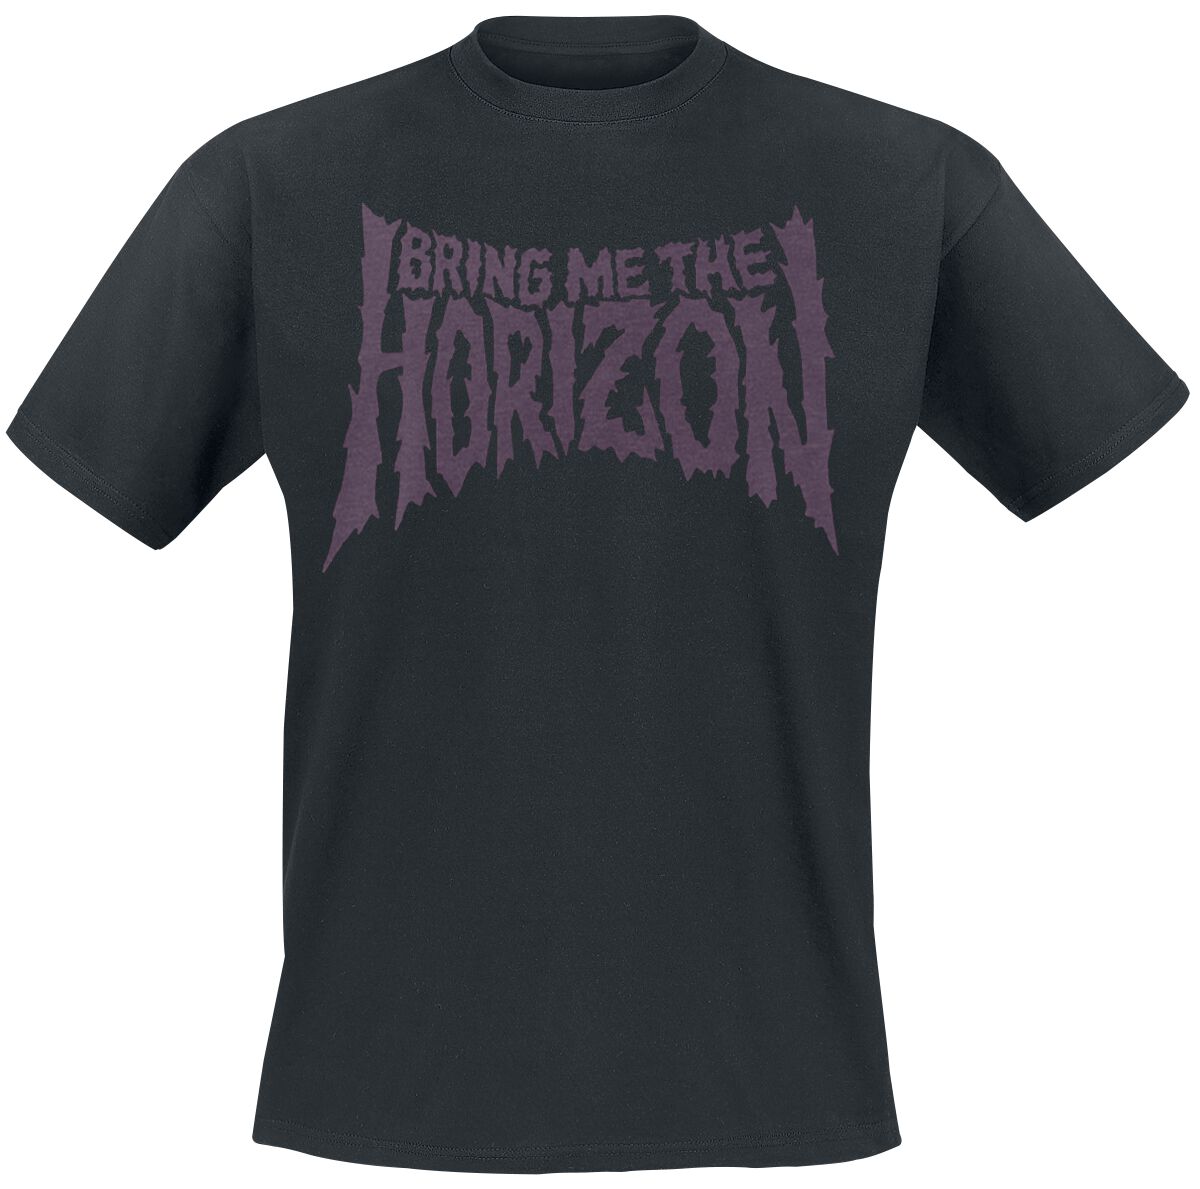 Bring Me The Horizon T-Shirt - Reaper - S bis 3XL - für Männer - Größe L - schwarz  - Lizenziertes Merchandise!